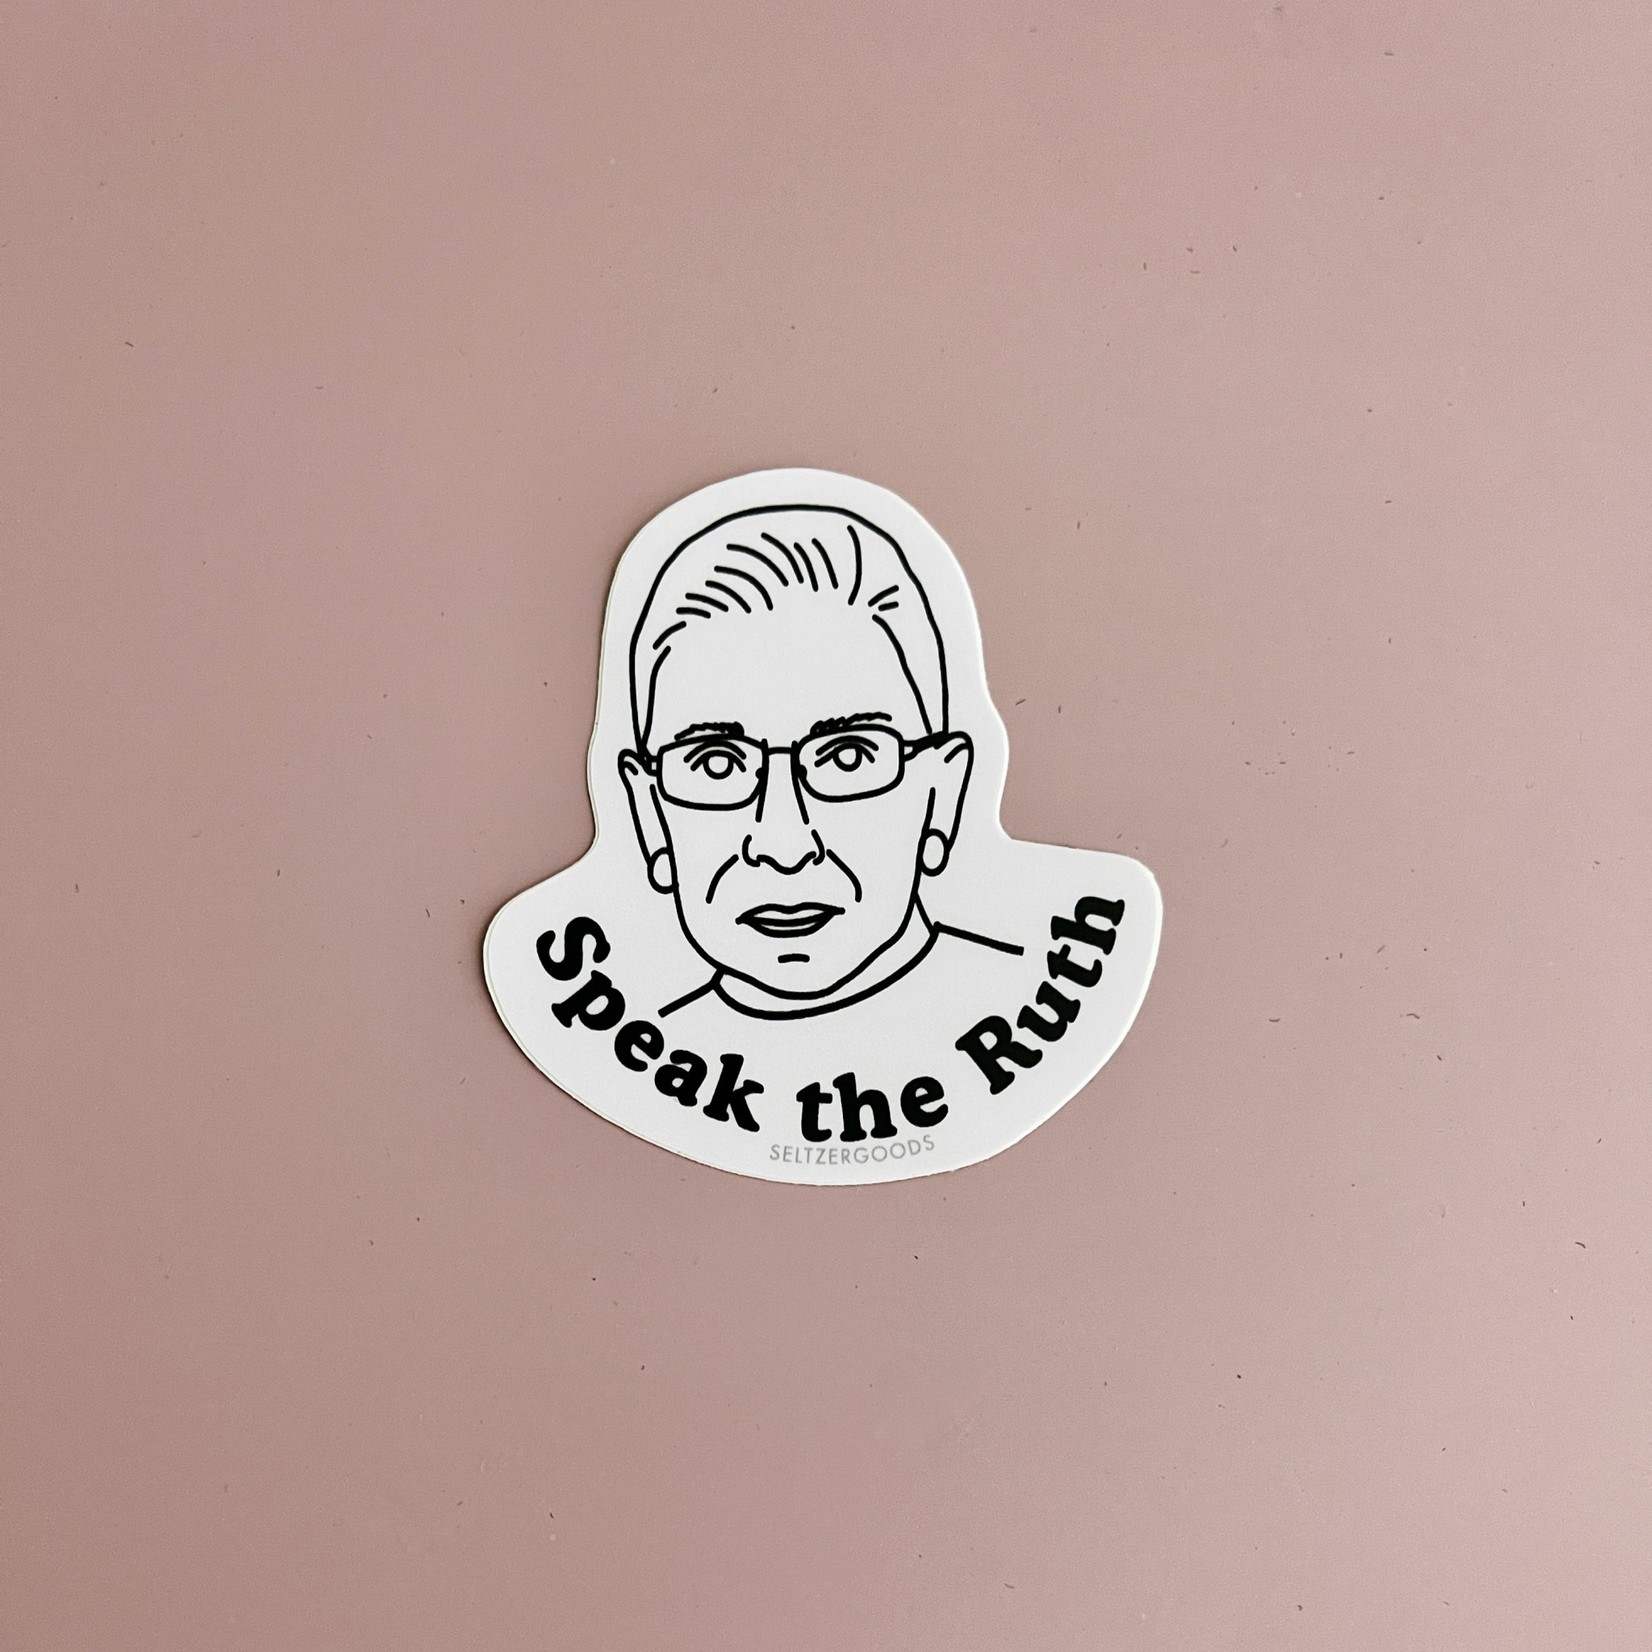 RBG (Speak the Ruth) Sticker